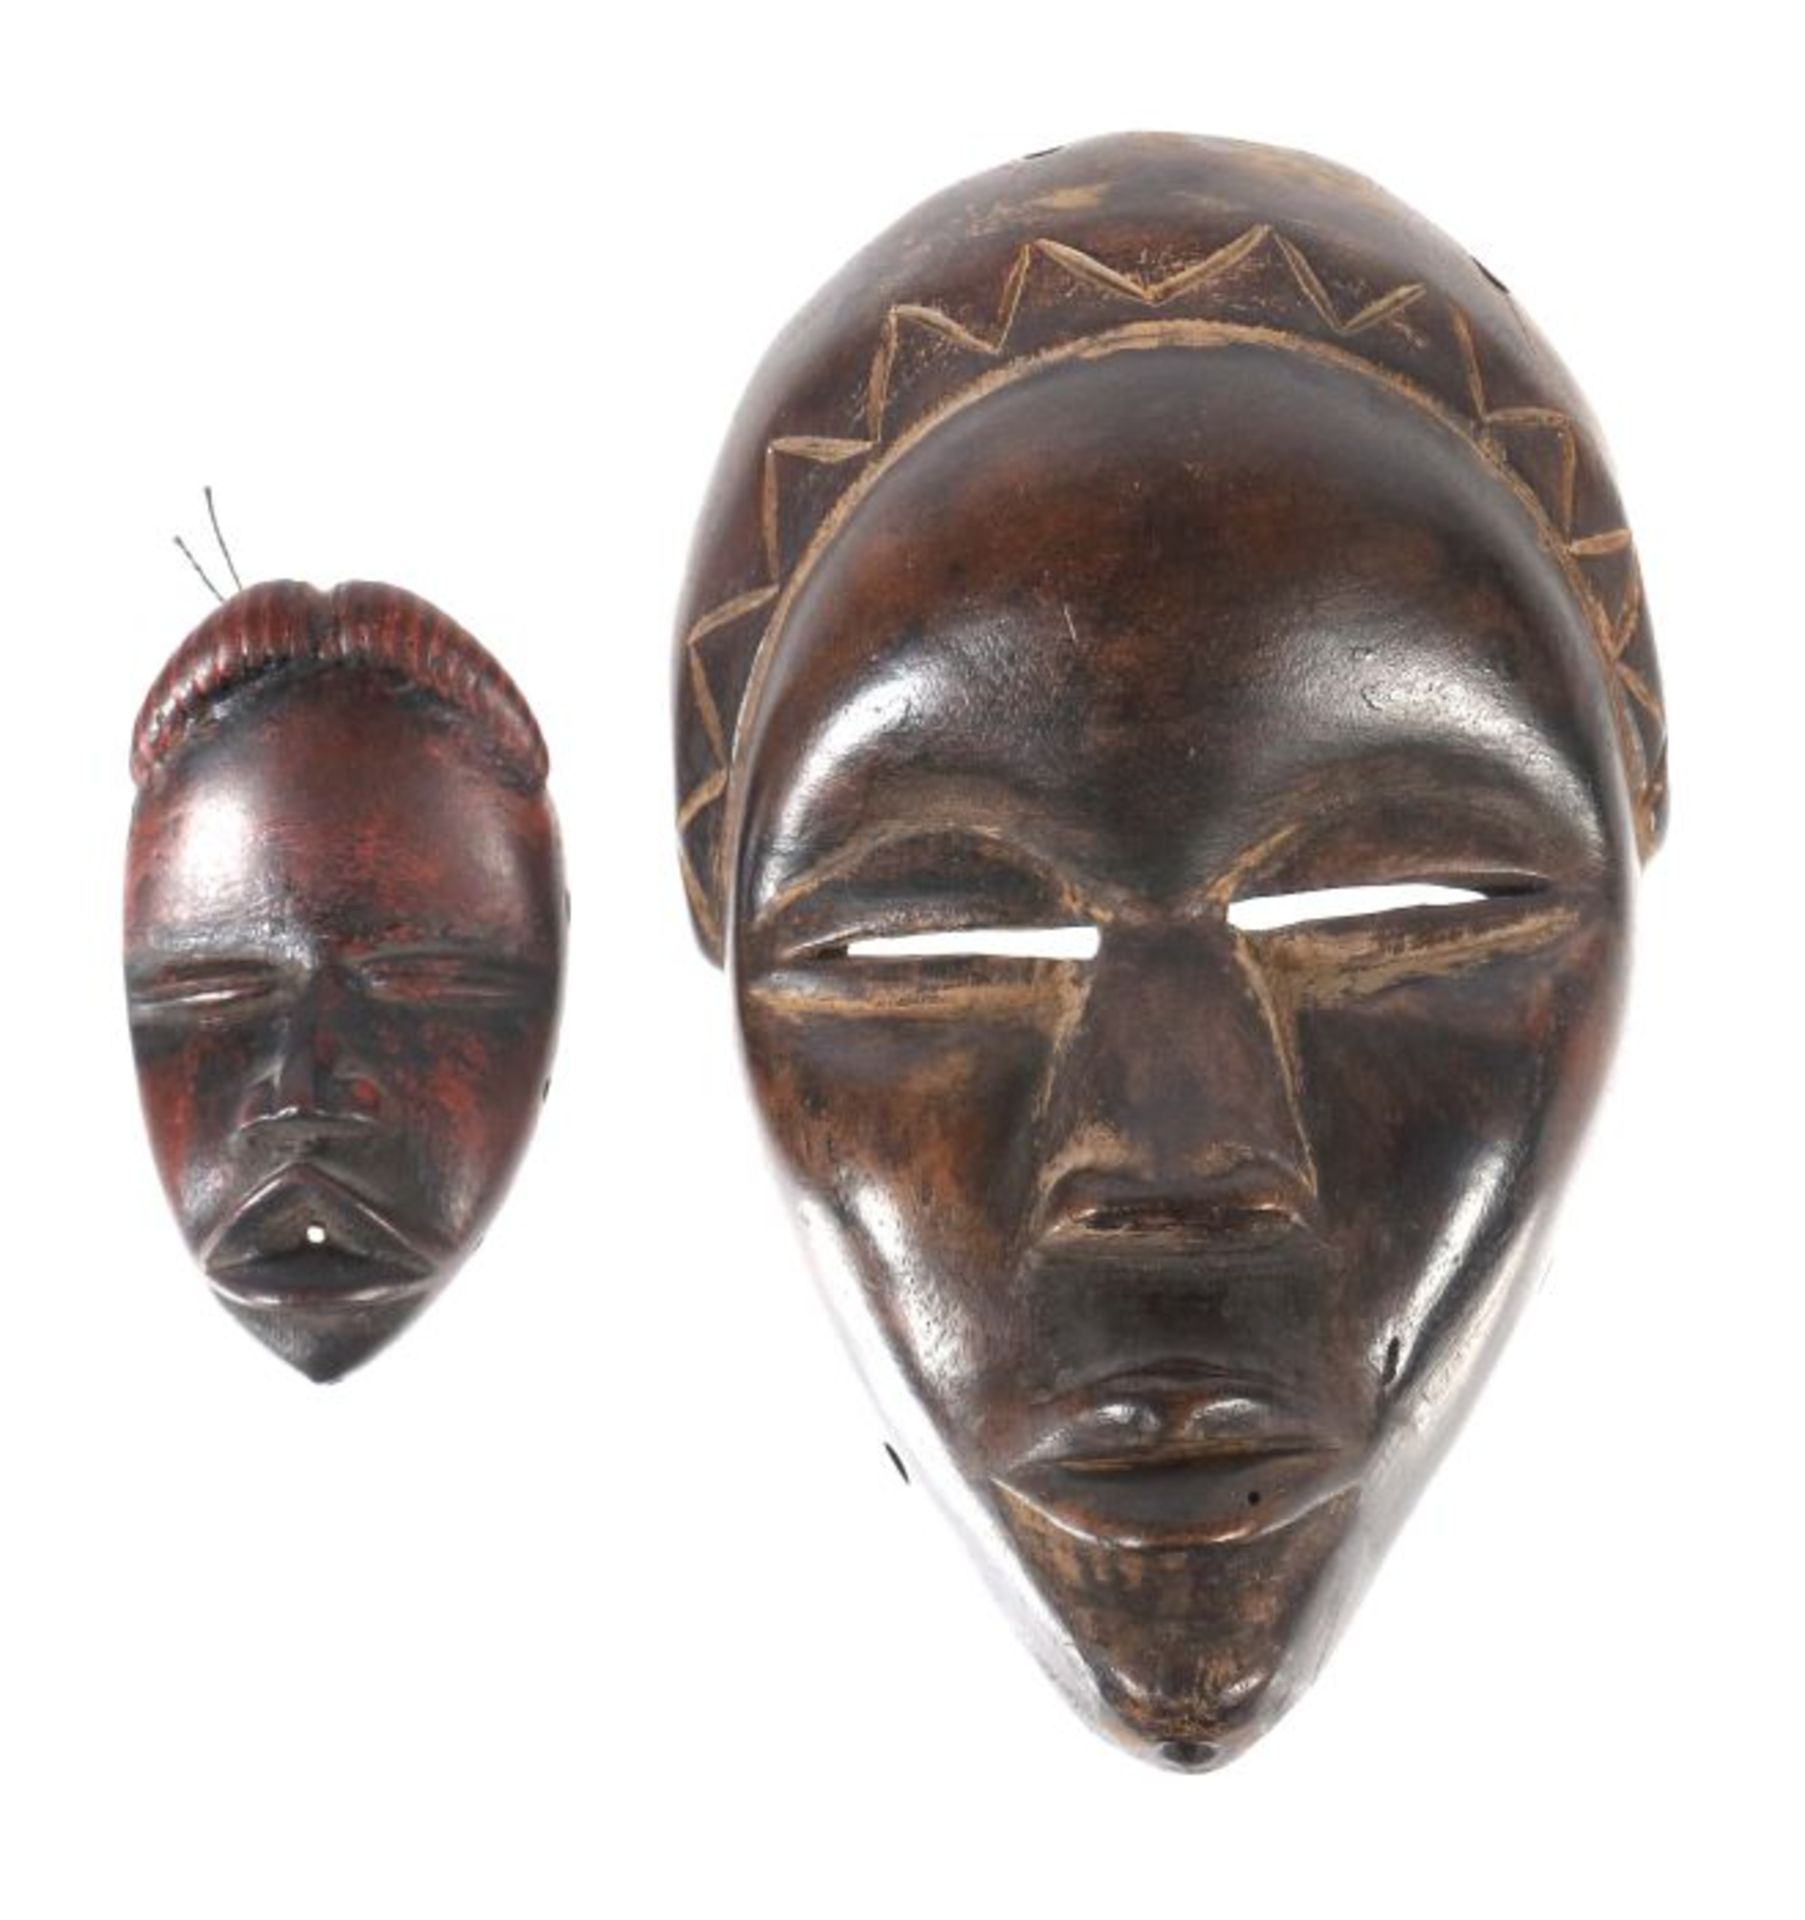 Zwei Miniatur-Masken der DanElfenbeinküste, kleine Holzmasken mit menschlichen Gesichtern und